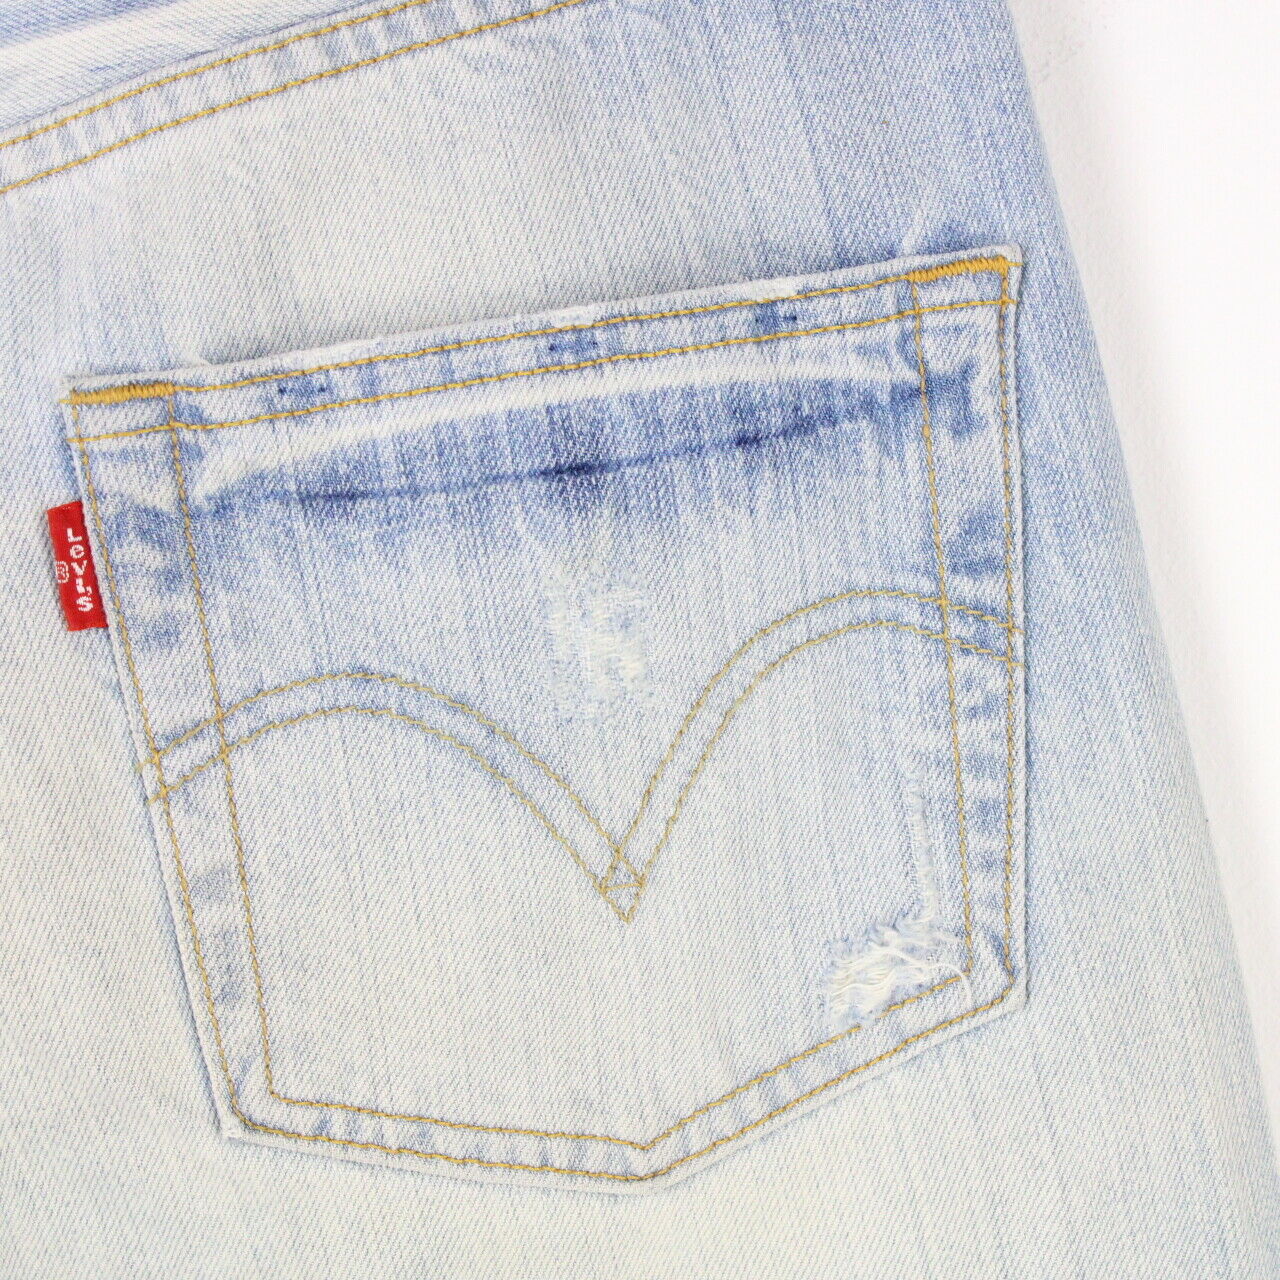 Mens Vintage LEVIS 501 Jeans Light Blue | W30 L30